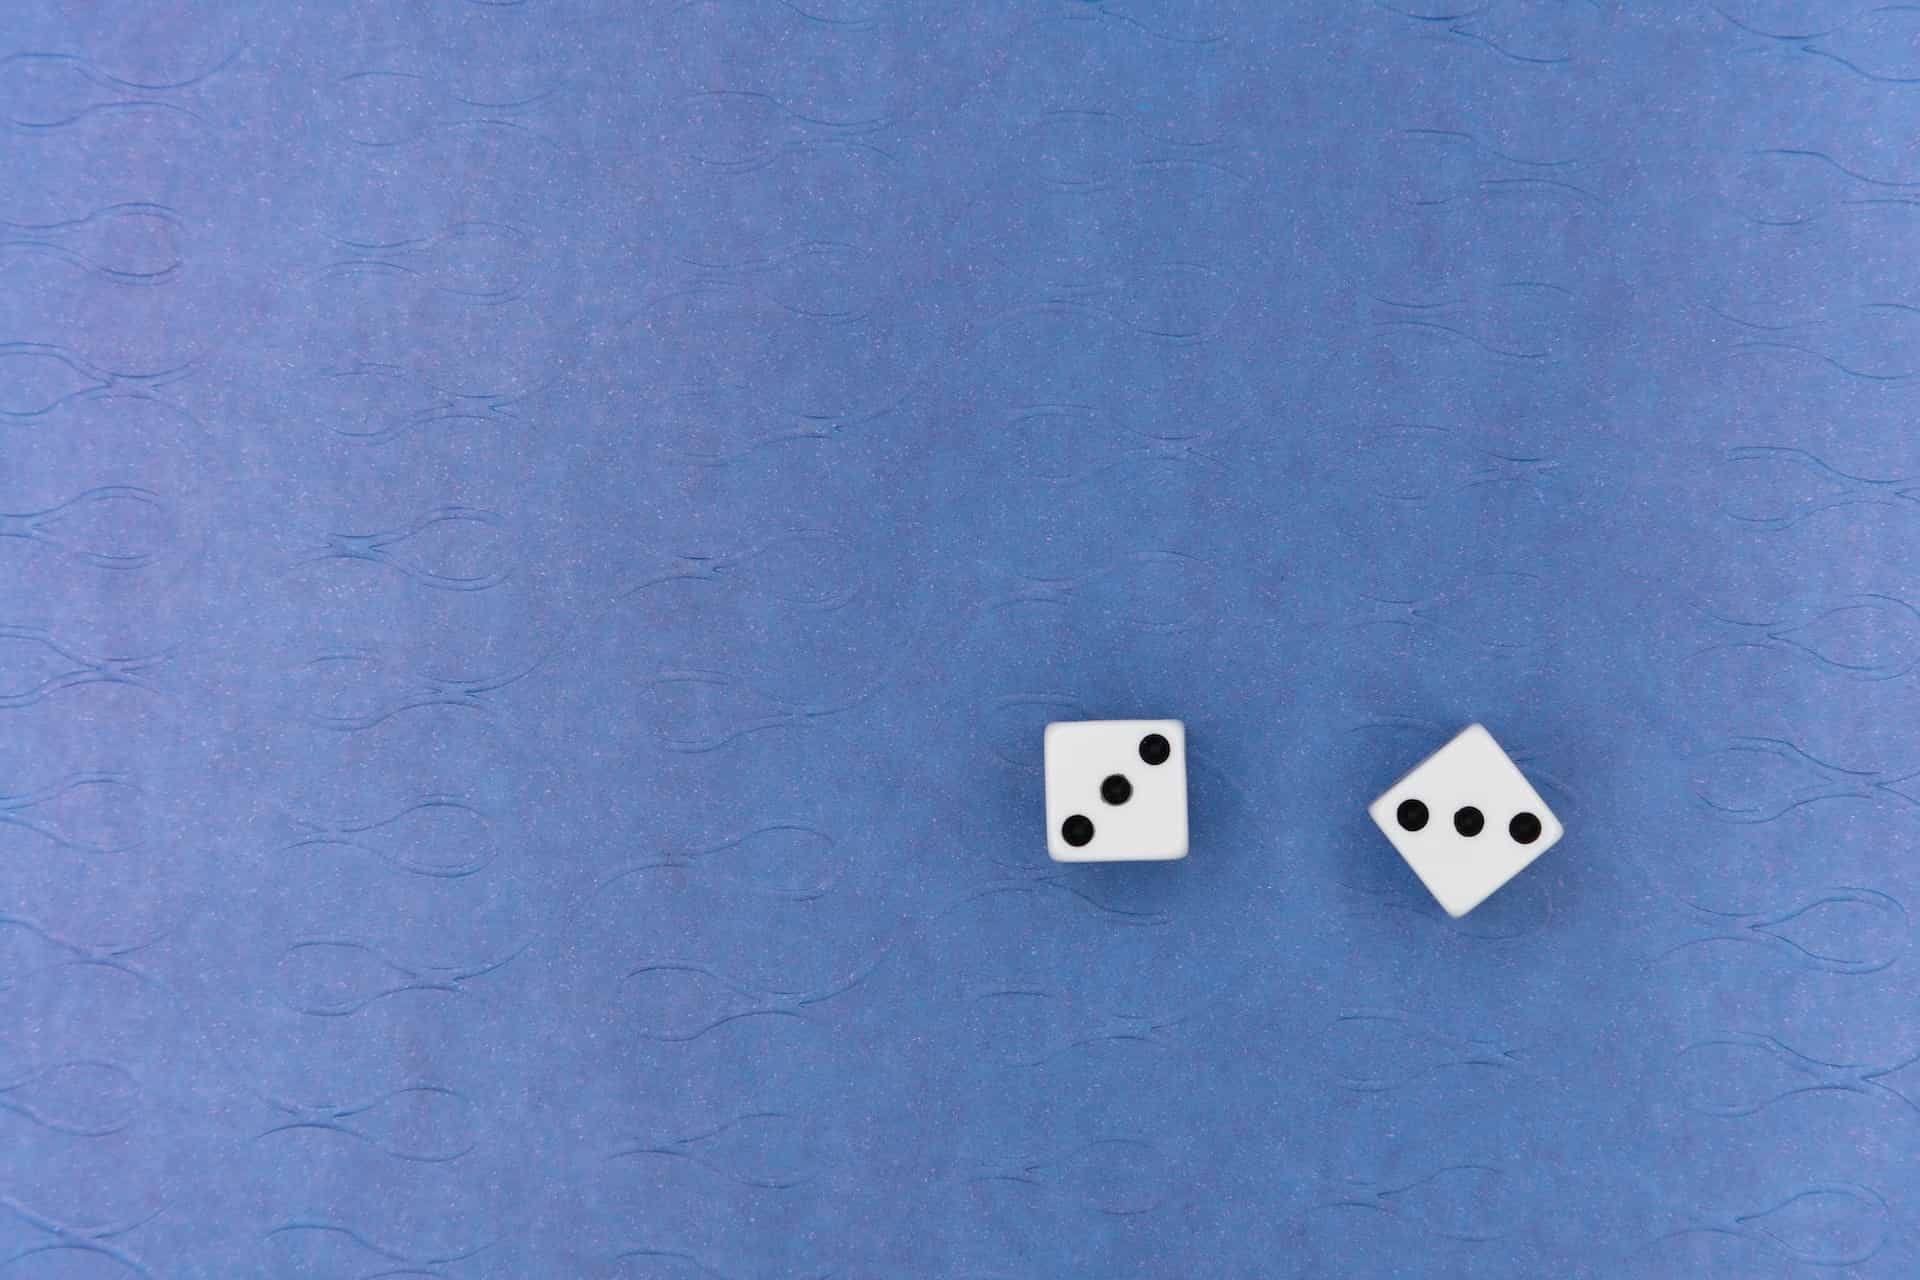 Dua dadu putih kecil di permukaan biru.